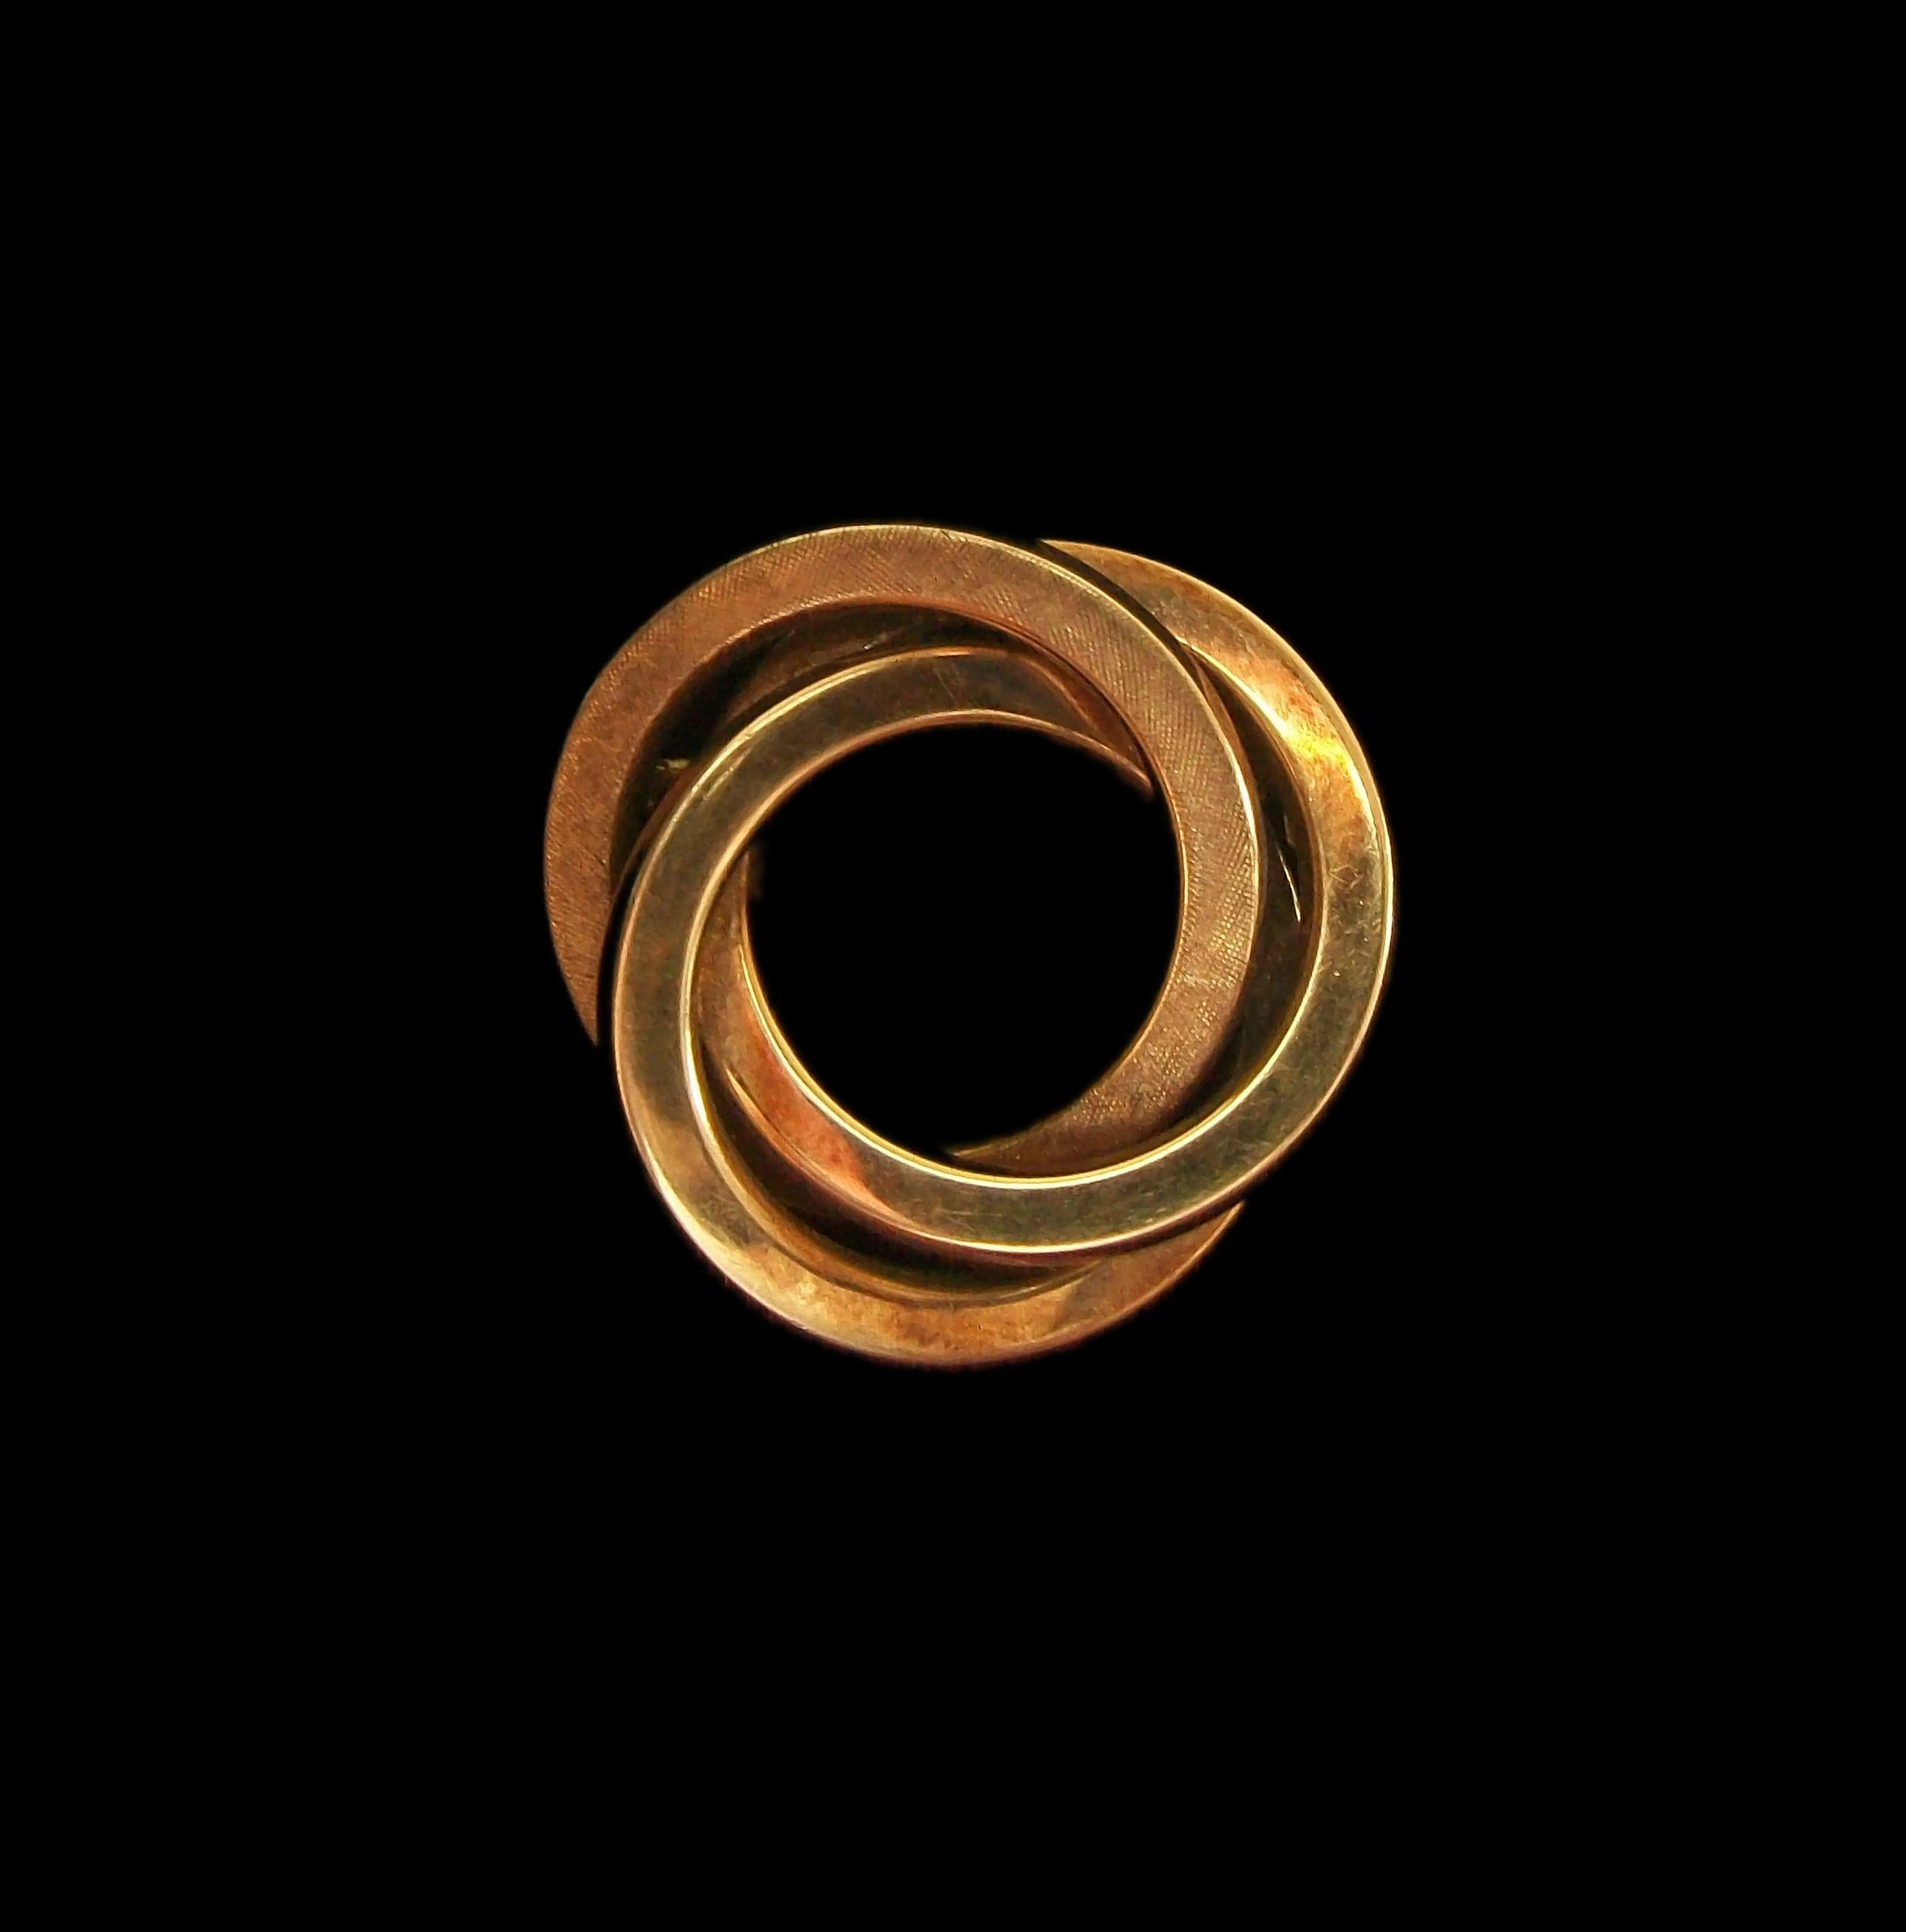 CARL CHRISTIAN FJERDINGSTAD (1891-1968) - Art Deco Brosche oder Anstecknadel aus 14K/585er Gelbgold - ein Kreis mit gedrehtem Finish - glattes Finish der anderen beiden Kreise - feinste Verarbeitung und Details - komplett handgefertigt - 585er